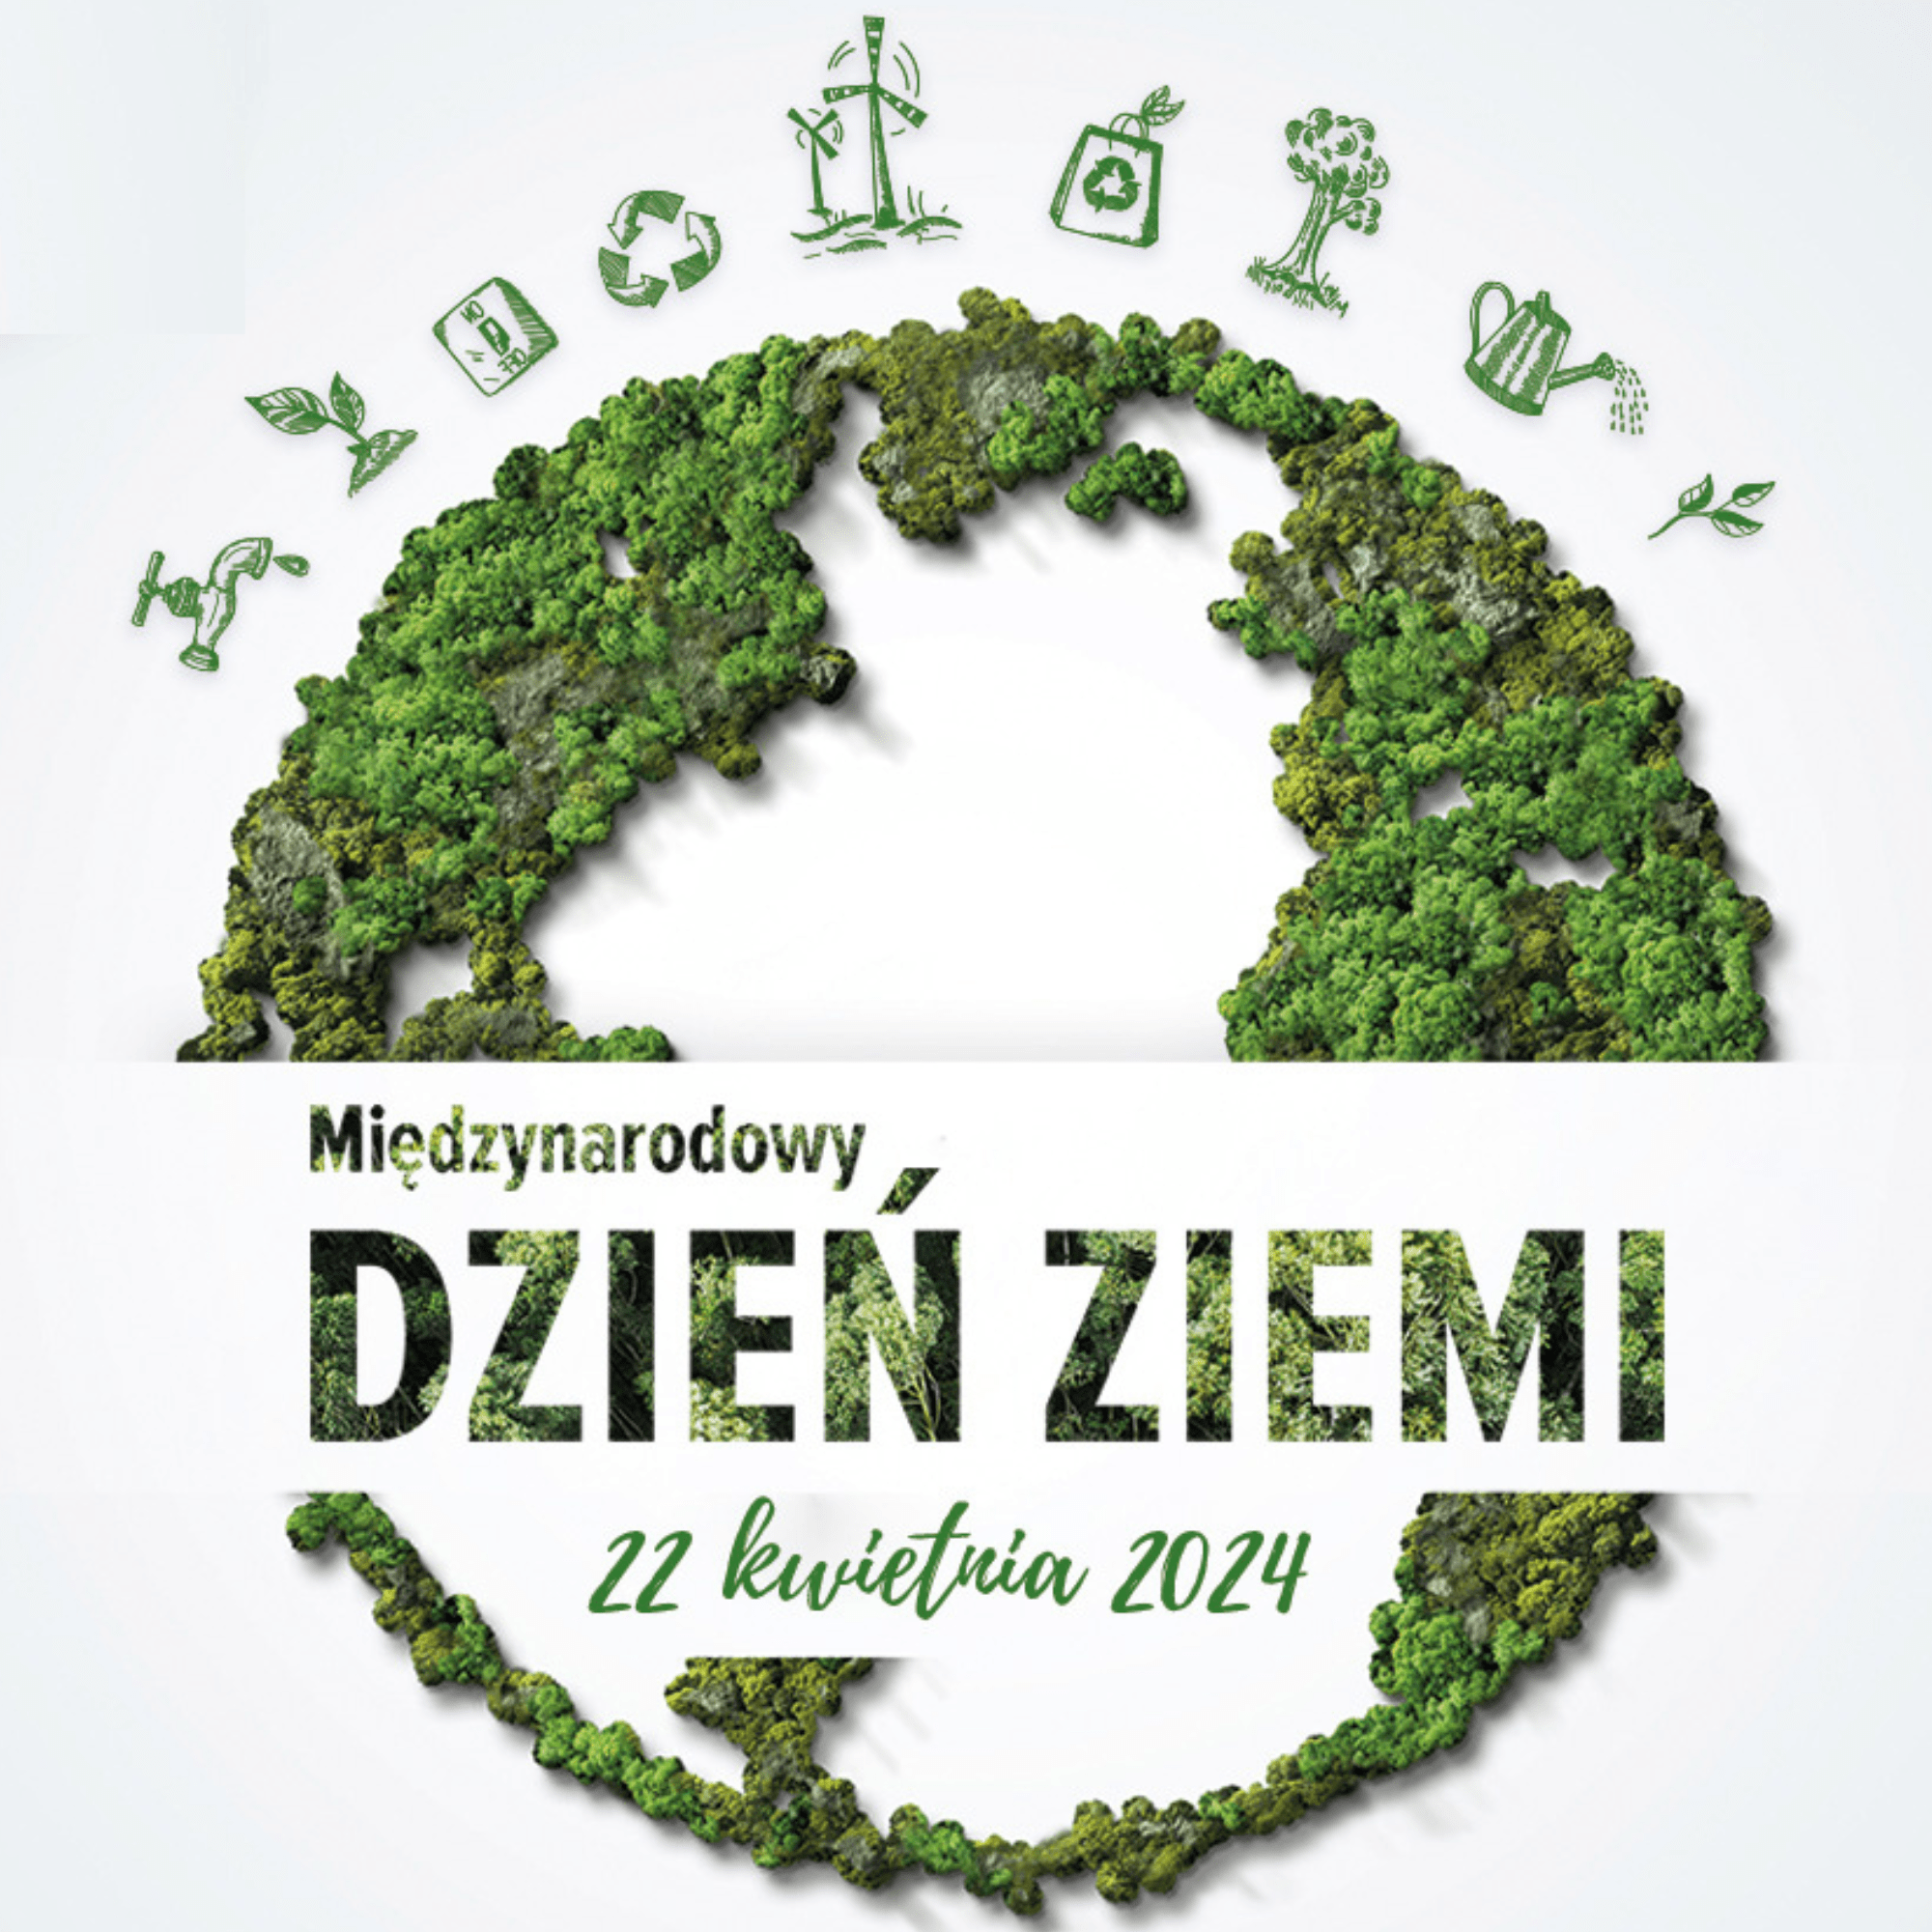 Międzynarodowy Dzień Ziemi 2024 - Czysta Bydgoszcz - odpady komunalne,  czystość, zieleń, energia